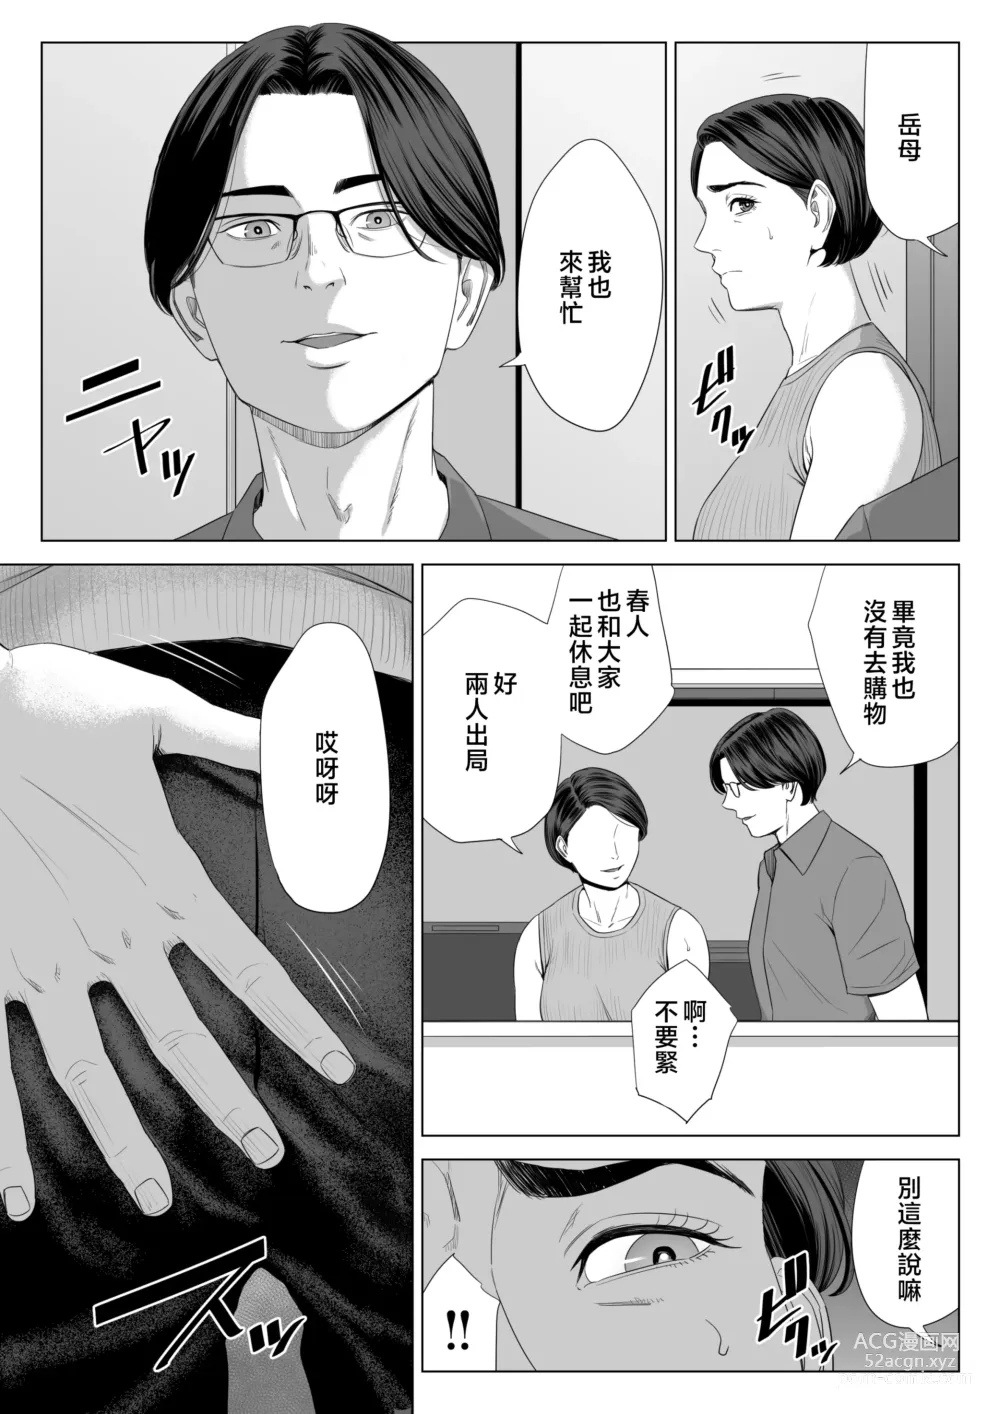 Page 58 of doujinshi Gibo no Tsukaeru Karada.